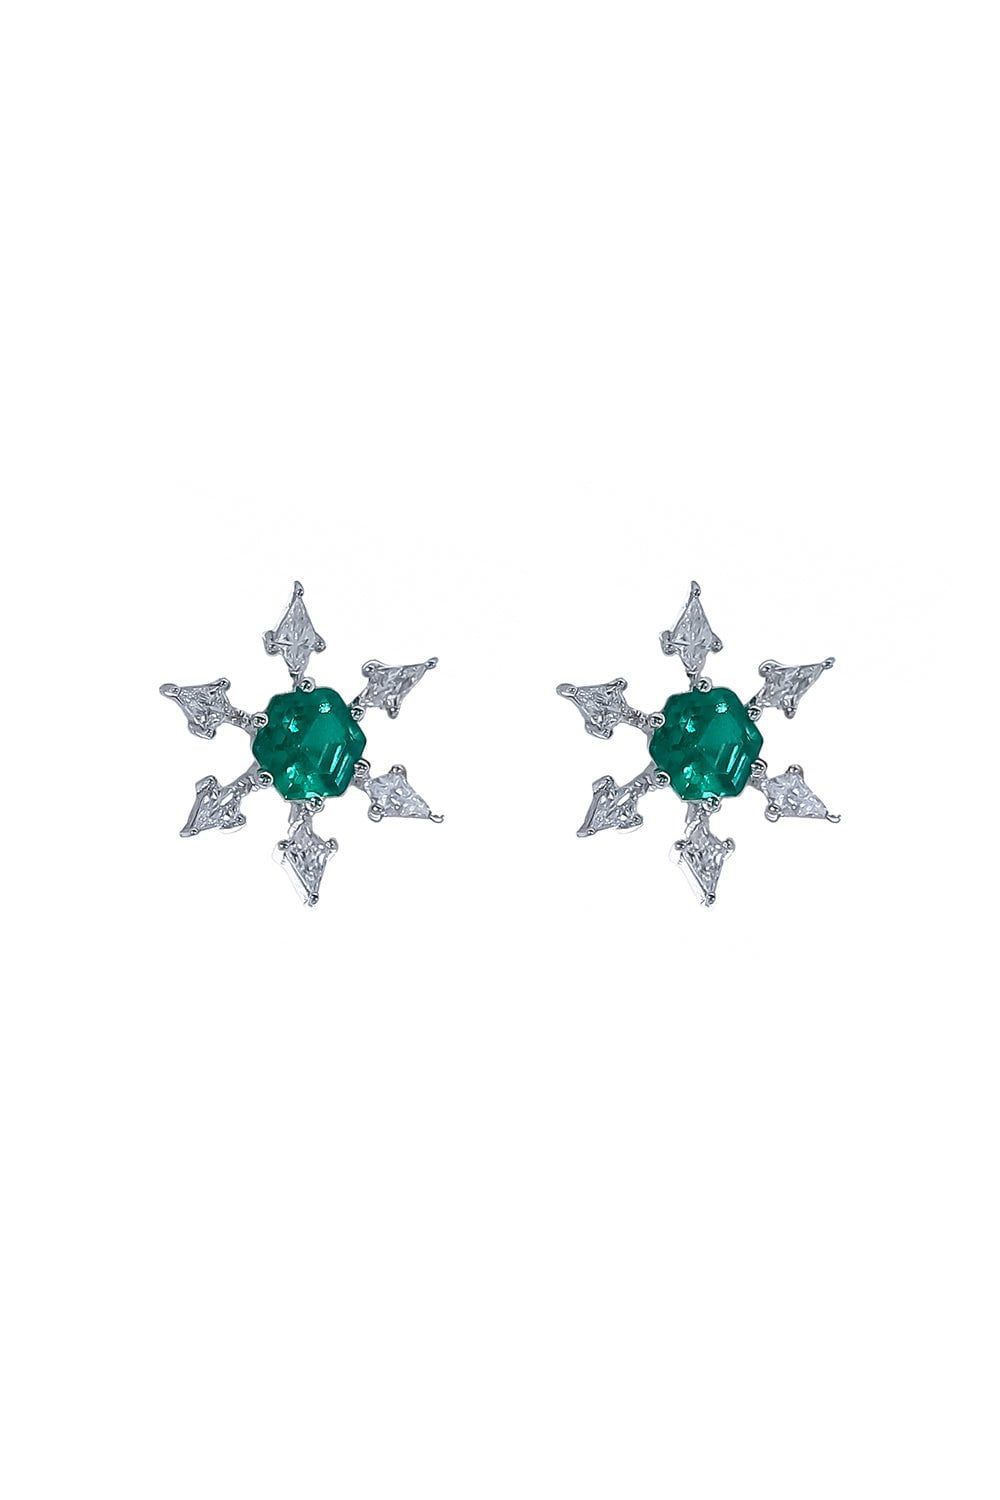 Hexagon Emerald Diamond Kite Earrings JEWELRYFINE JEWELEARRING ARUNASHI   